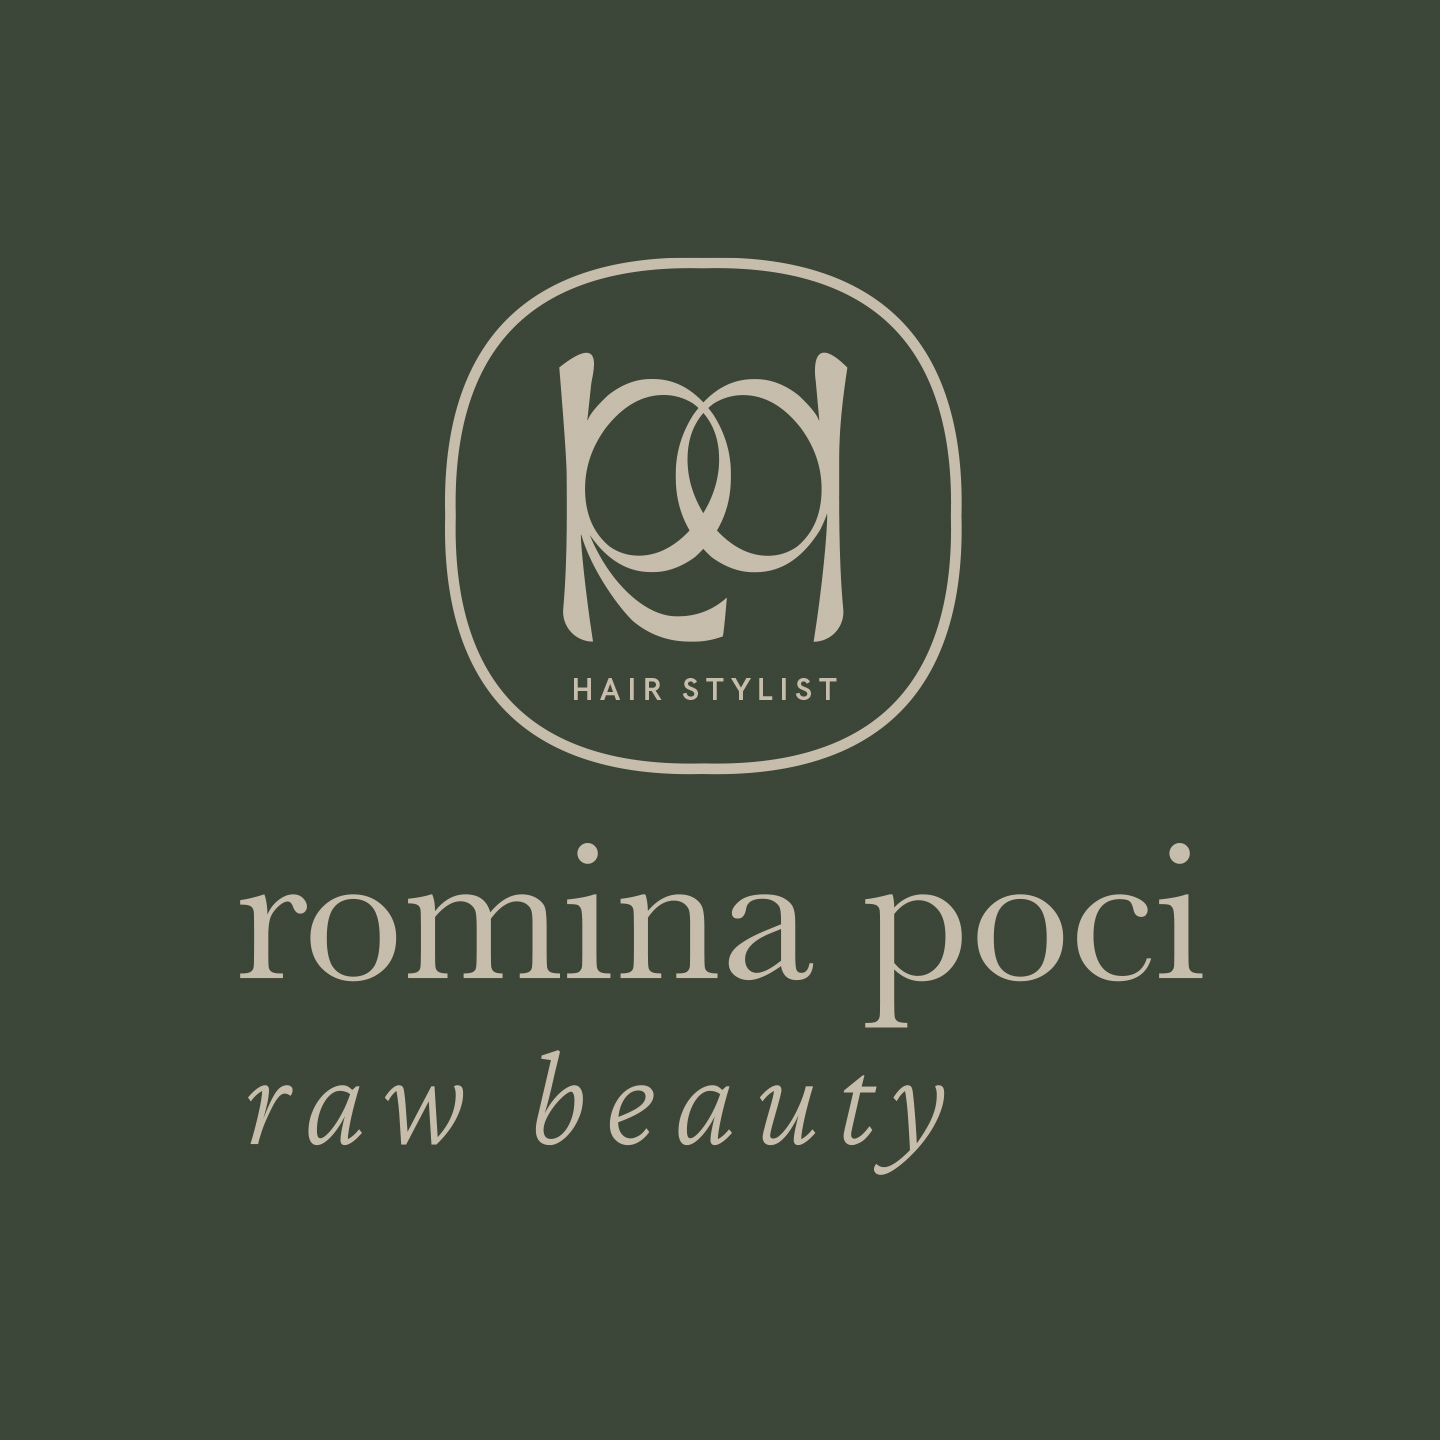 logo romina poci - raw beauty